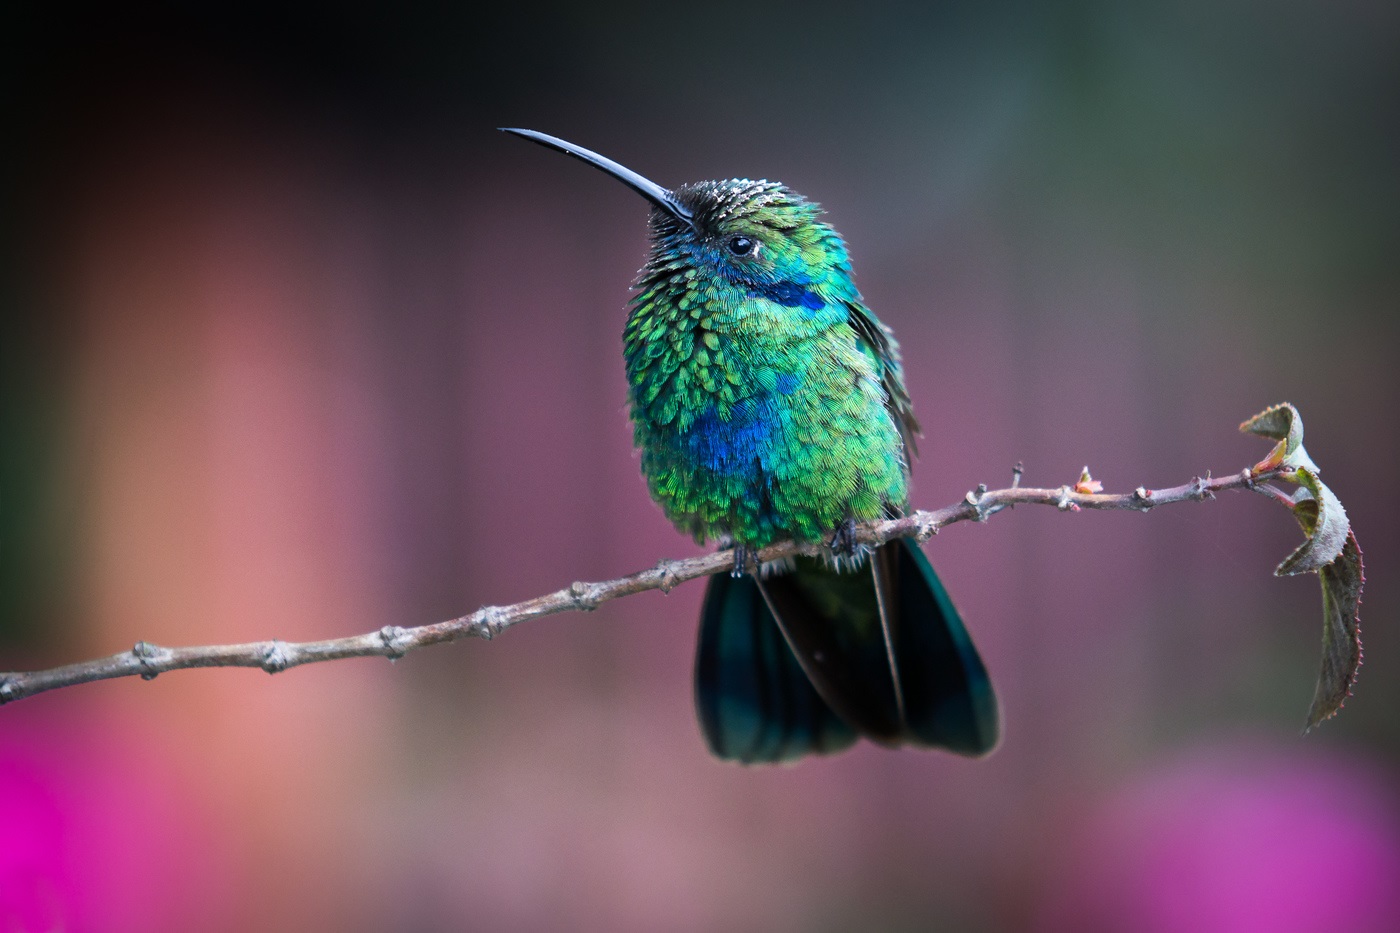 Colombian Andes: Ett foto av en kolibri på en gren